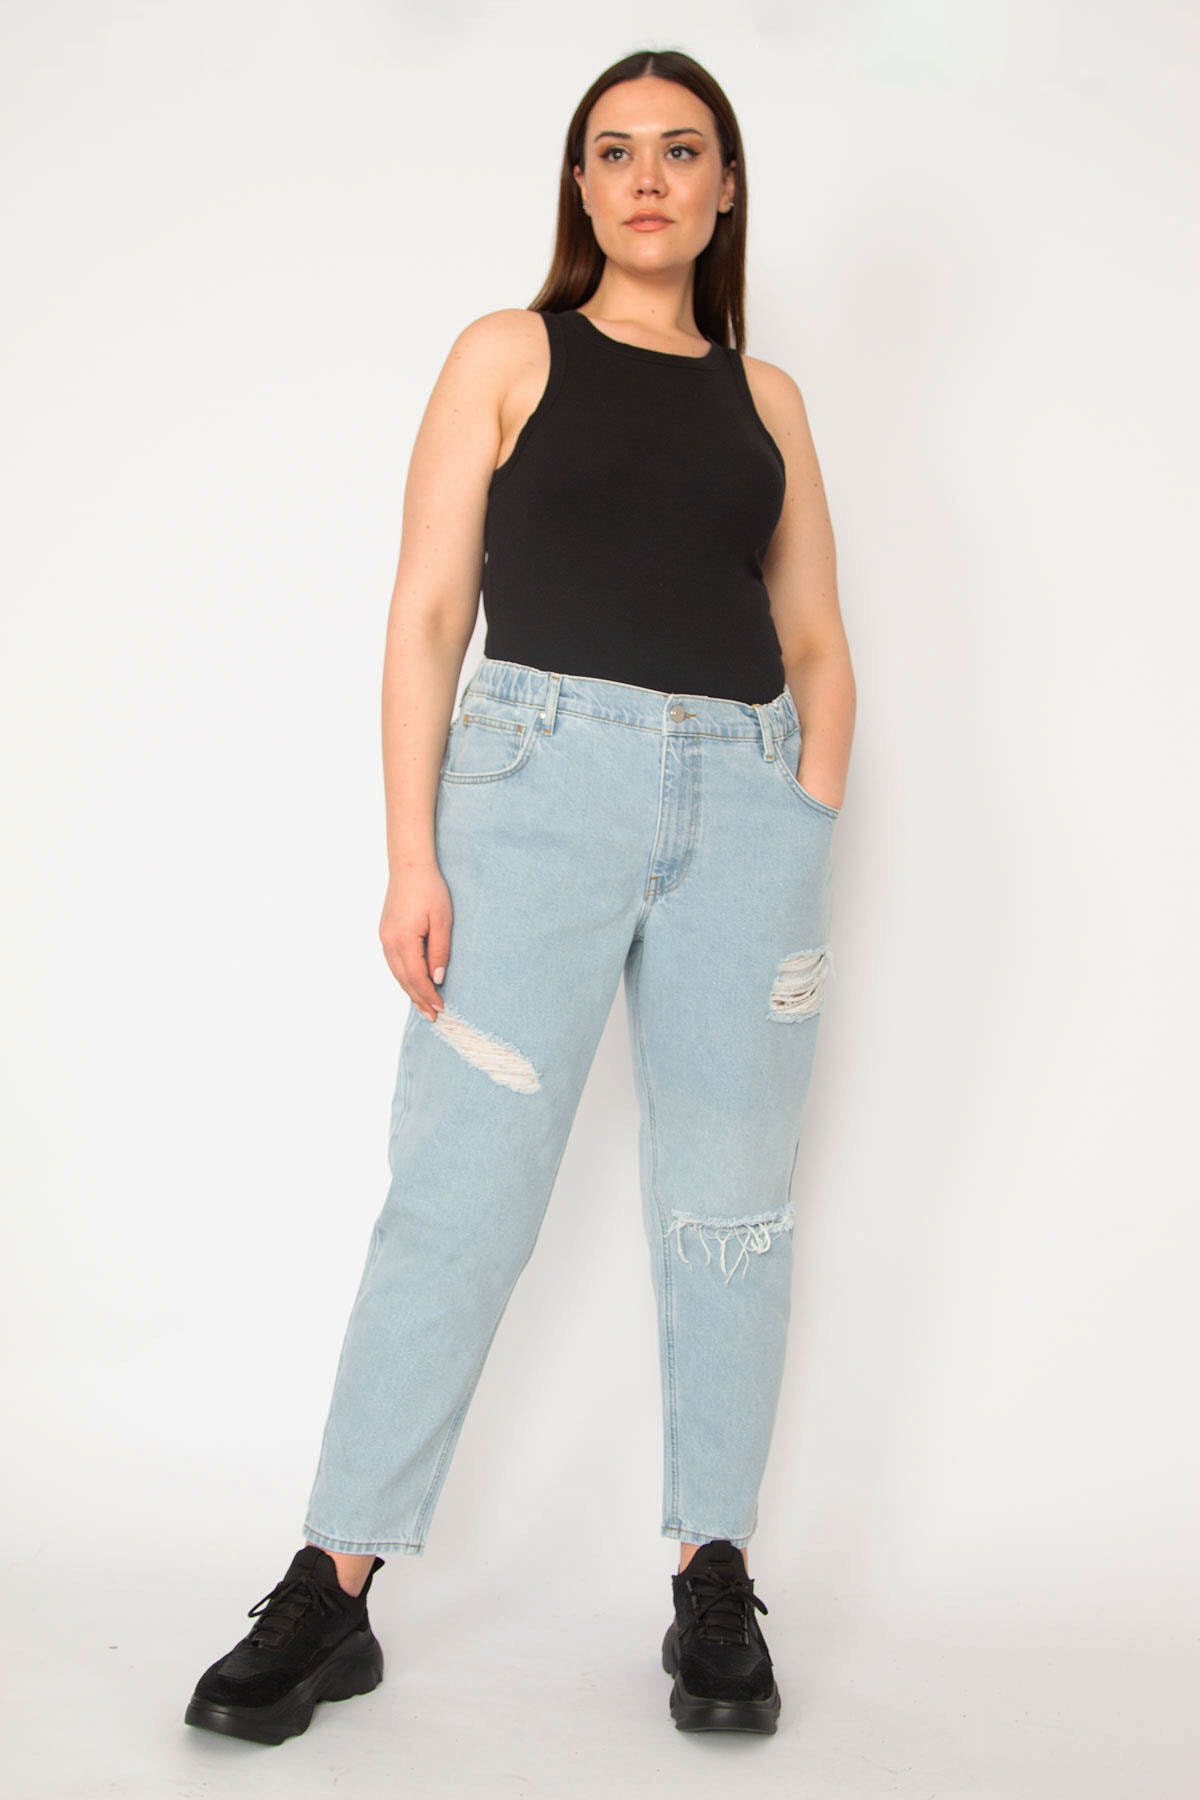 Şans Women's Plus Size Blue Ripped Detailed Side Belt Elastic 5 Pocket Jean Pants